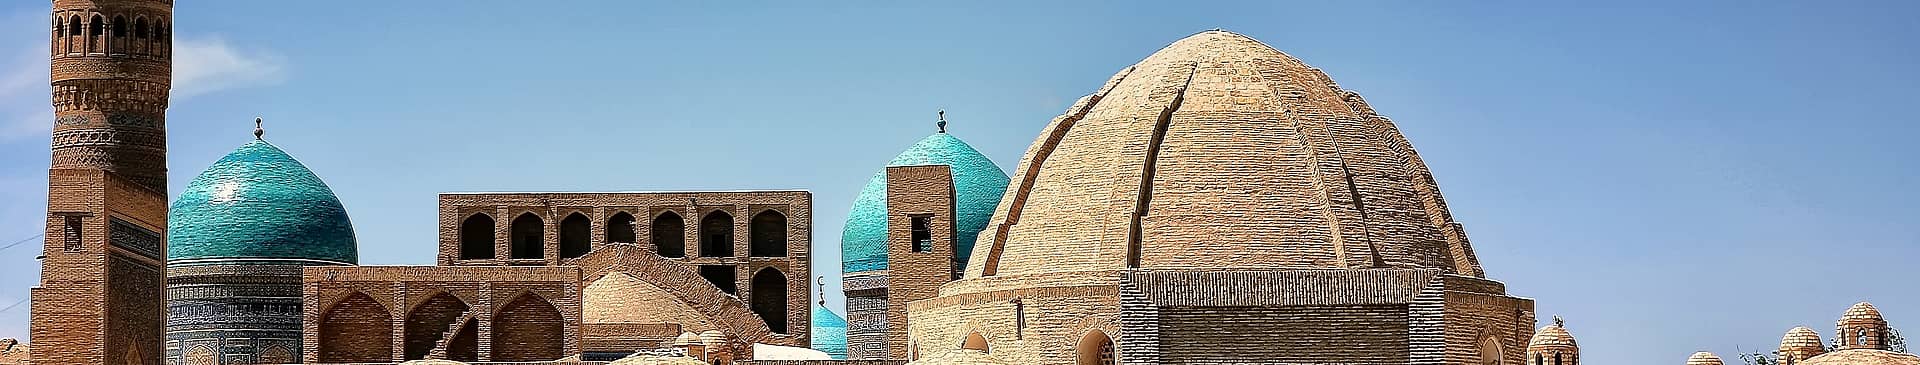 Uzbekistan in September